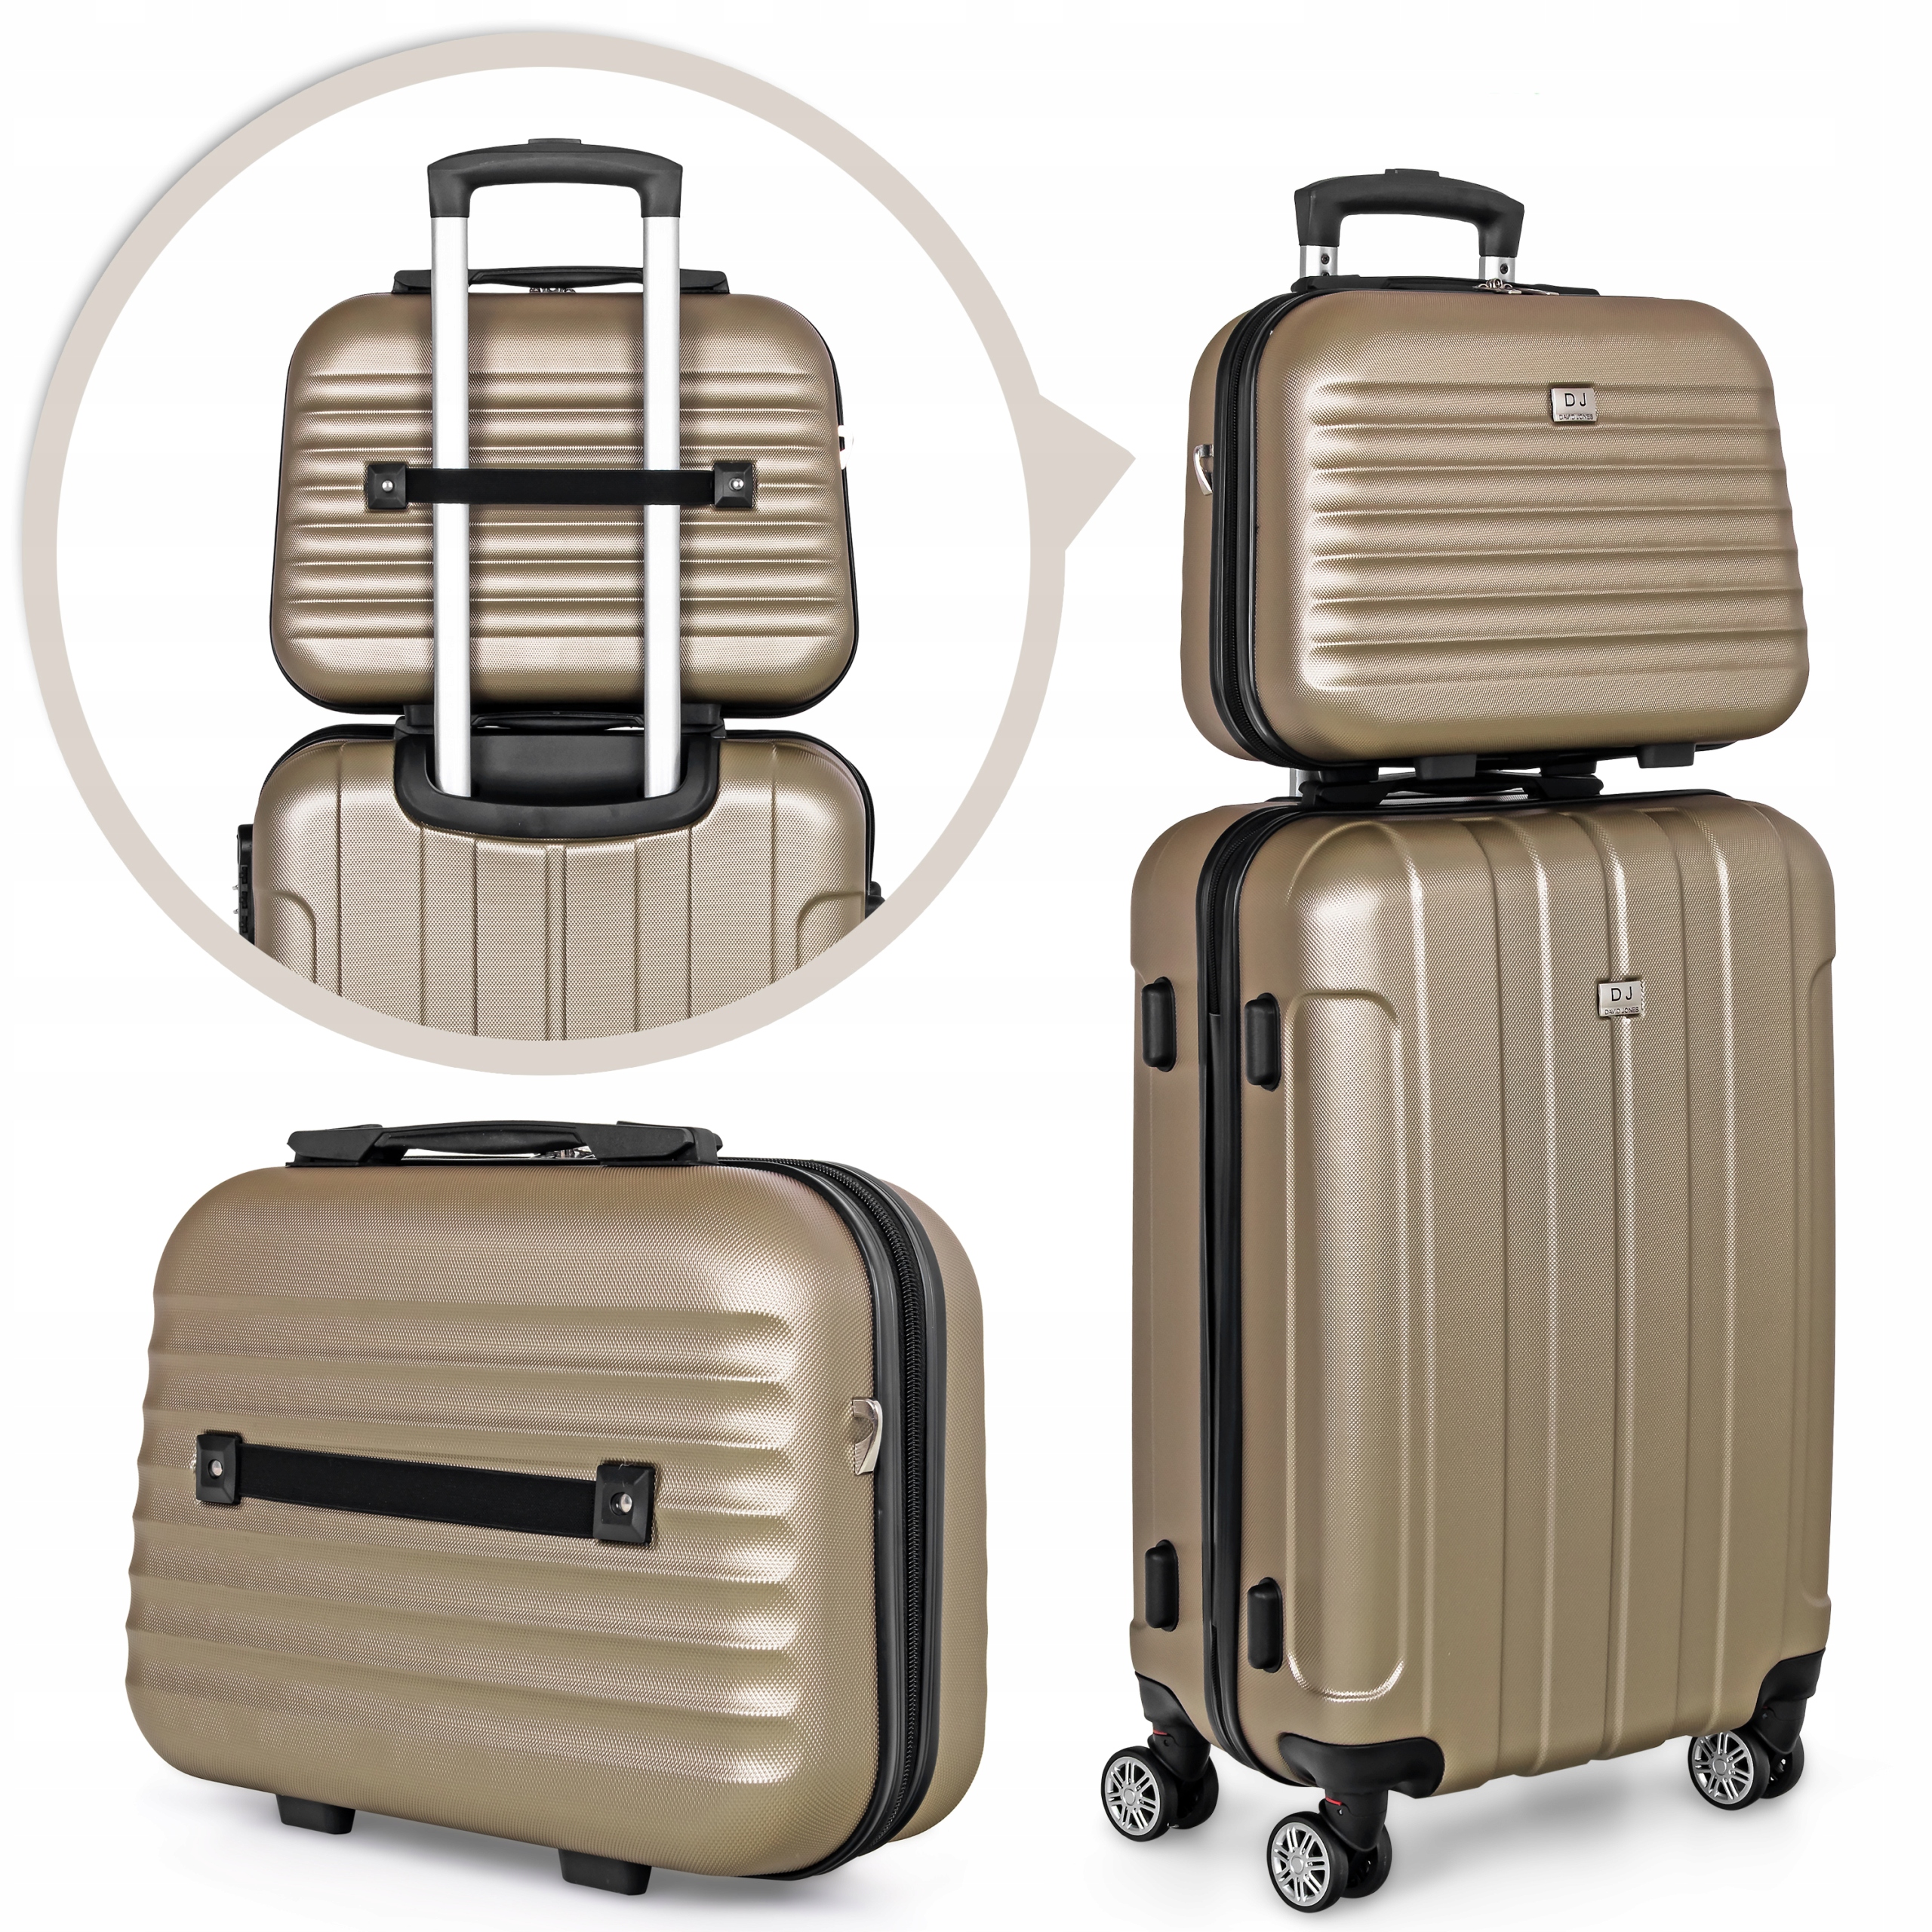 Zestaw walizek podróżnych David Jones 4w1 - BA-1050-3D